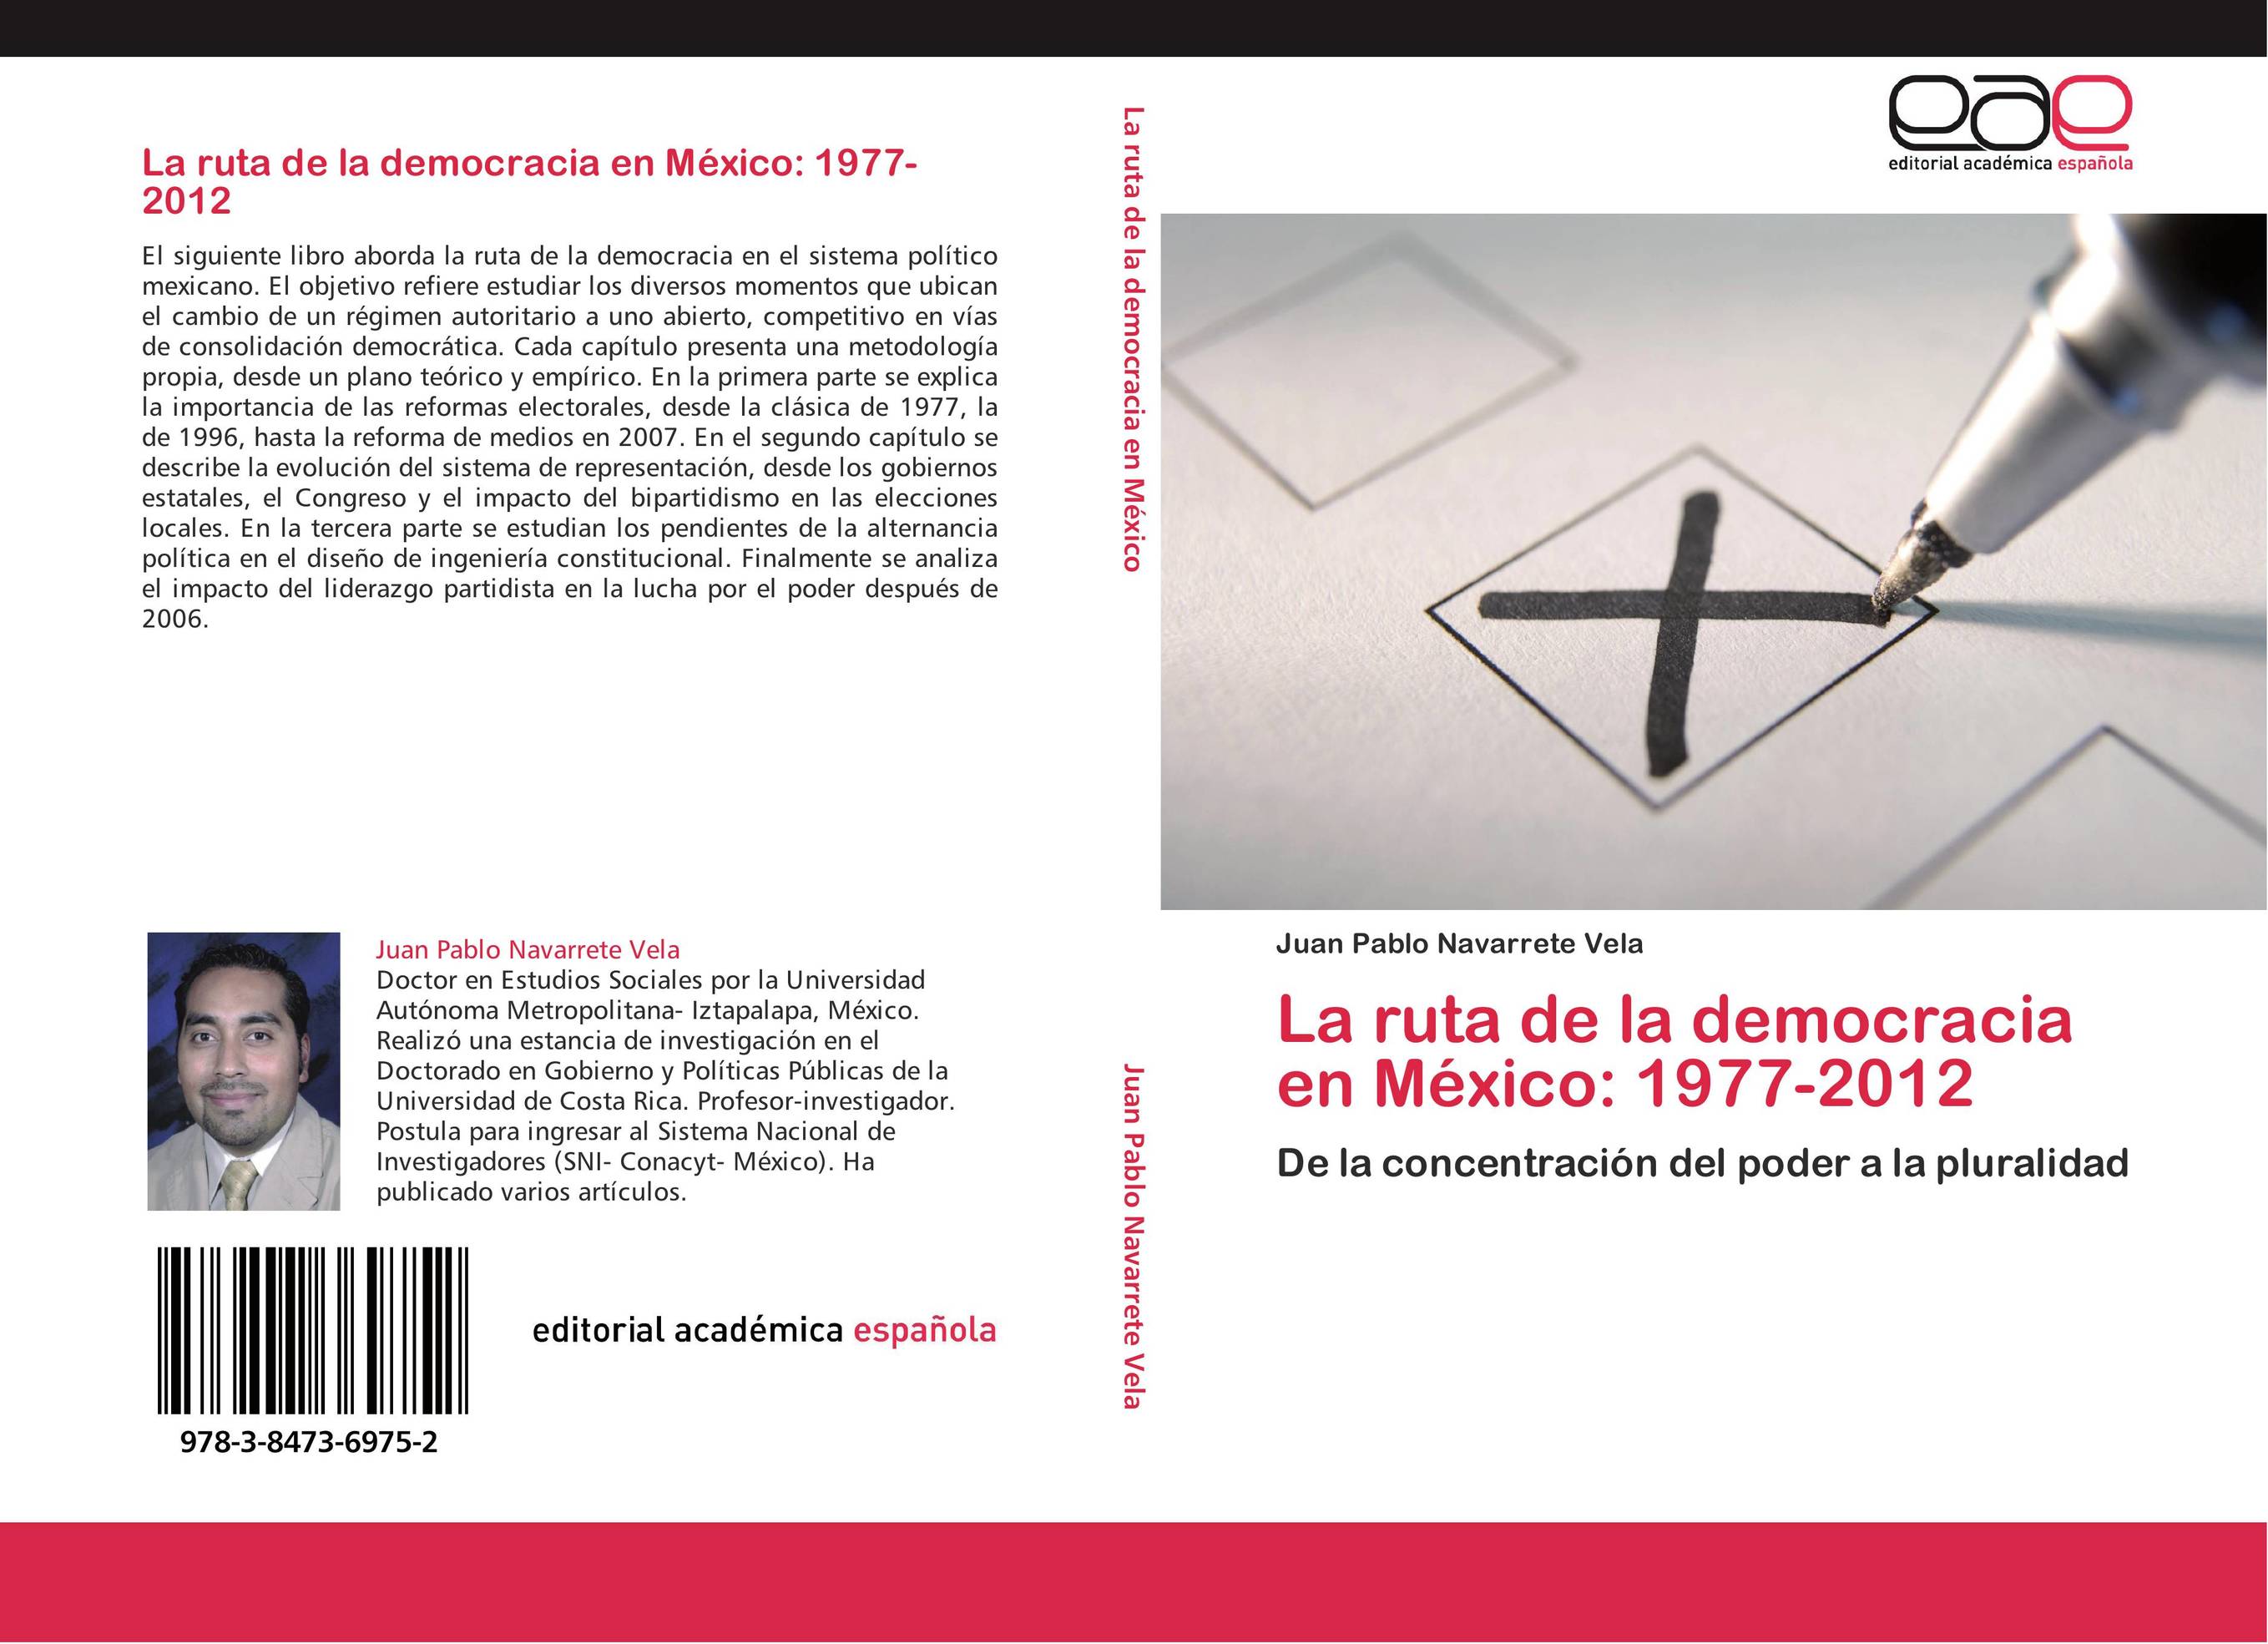 La ruta de la democracia en México: 1977-2012